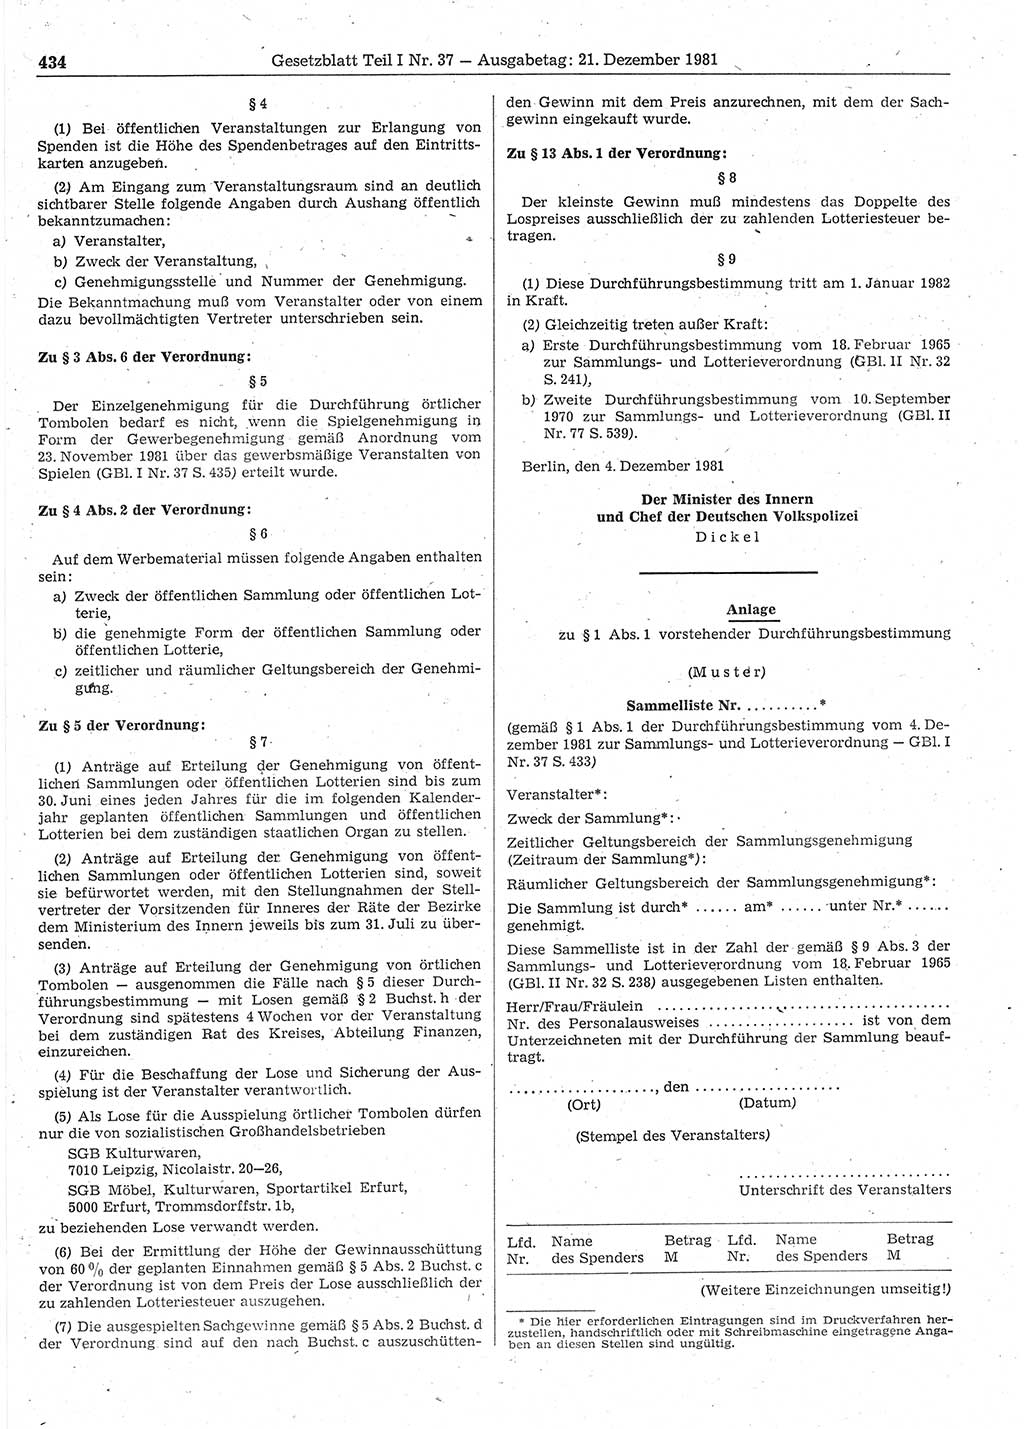 Gesetzblatt (GBl.) der Deutschen Demokratischen Republik (DDR) Teil Ⅰ 1981, Seite 434 (GBl. DDR Ⅰ 1981, S. 434)